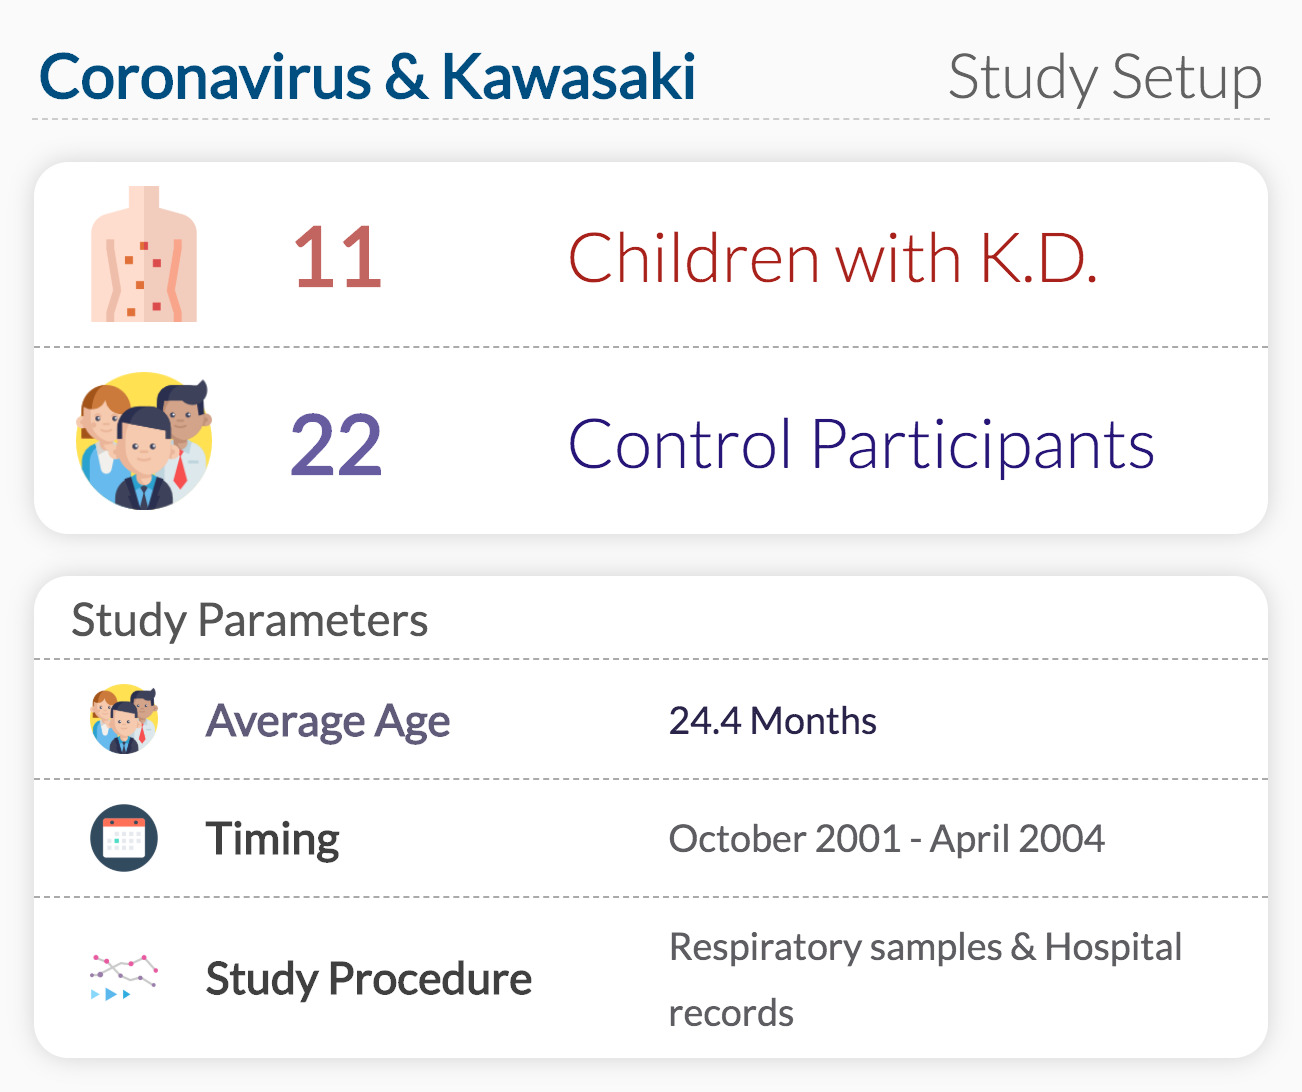 Coronavirus & Kawasaki Disease Study Setup